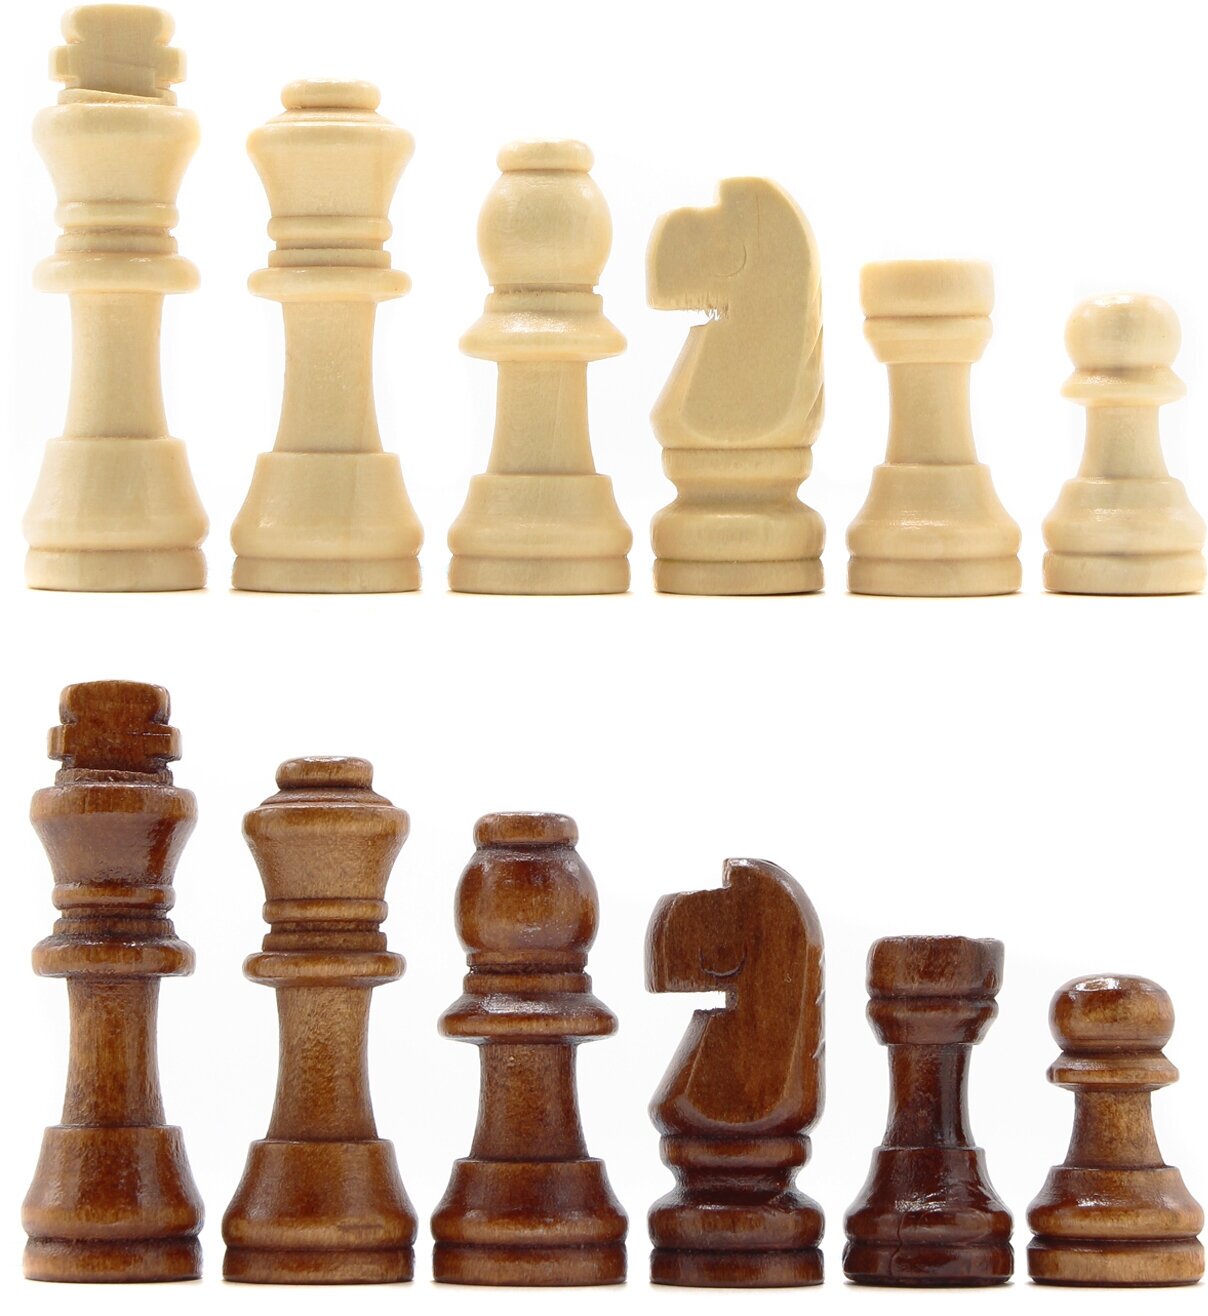 Набор шахматных фигур Фабрика Игр деревянные L (высота короля 5,3 см)